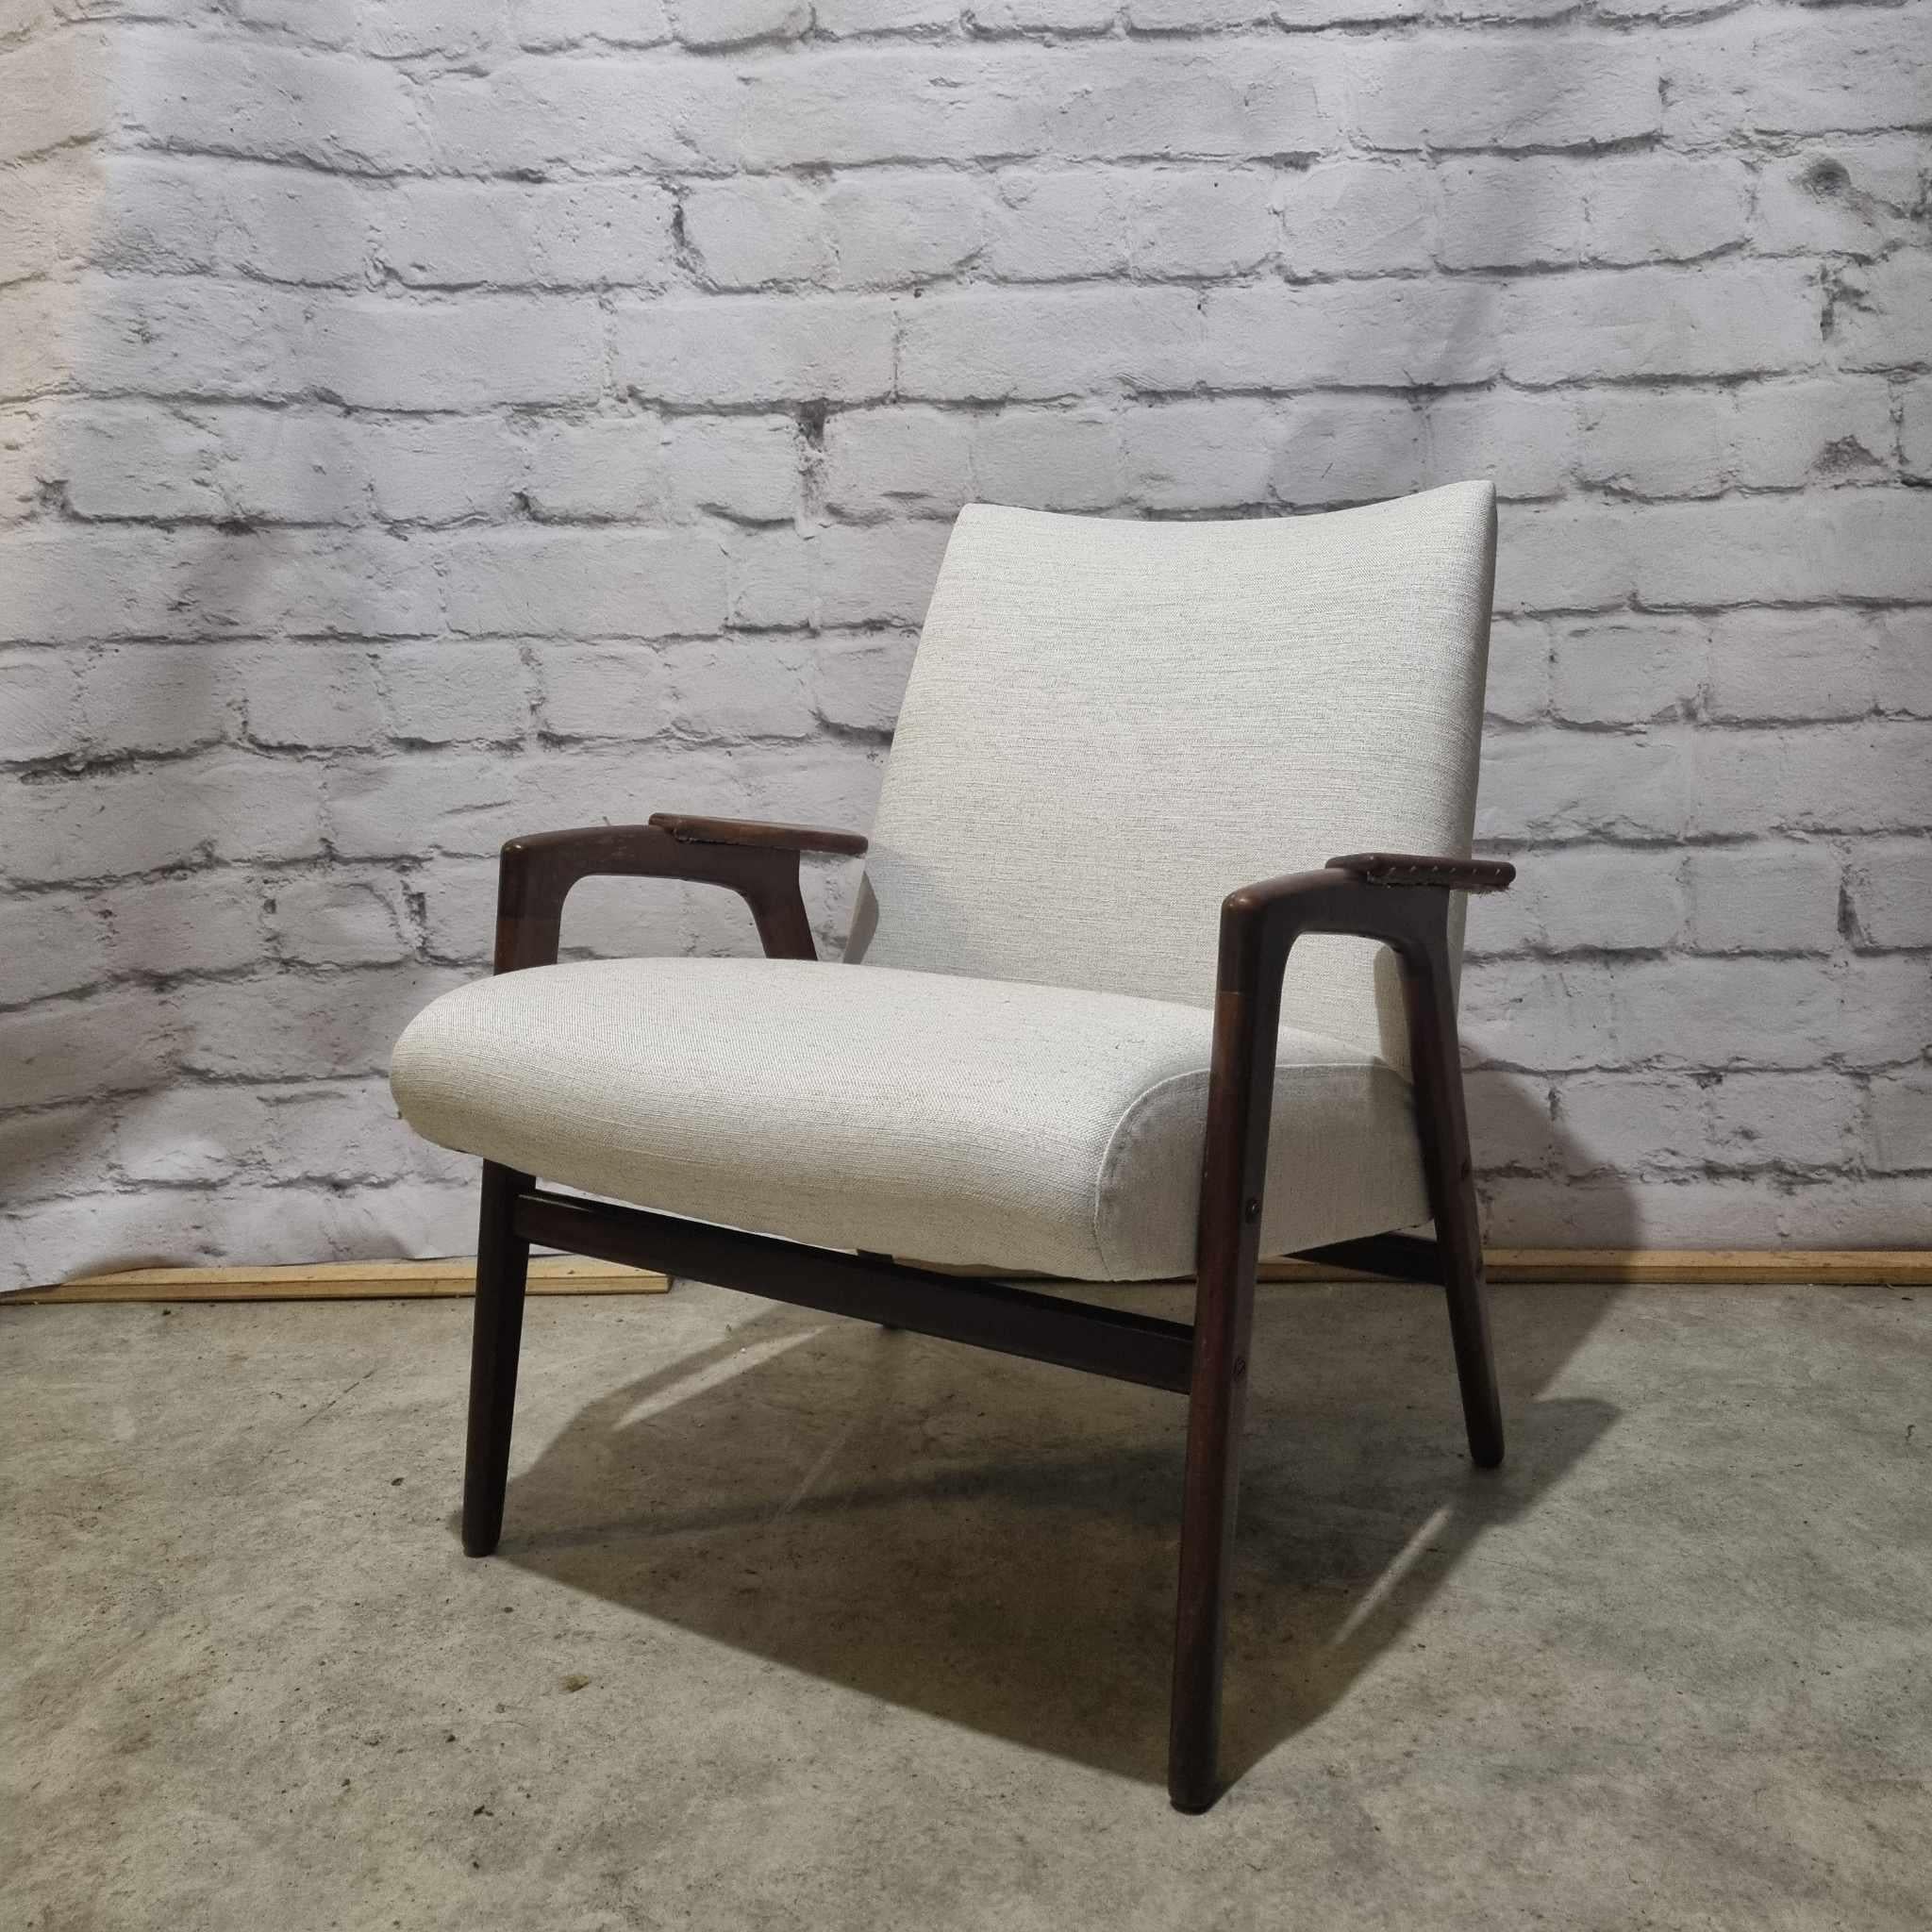 Un magnifique et très confortable fauteuil Ruster conçu par le grand designer suédois Yngve Ekstrom pour Swedese et vendu aux Pays-Bas par la célèbre société Pastoe.
Le design original du fauteuil Ruster faisait partie de la série Mingo, conçue pour